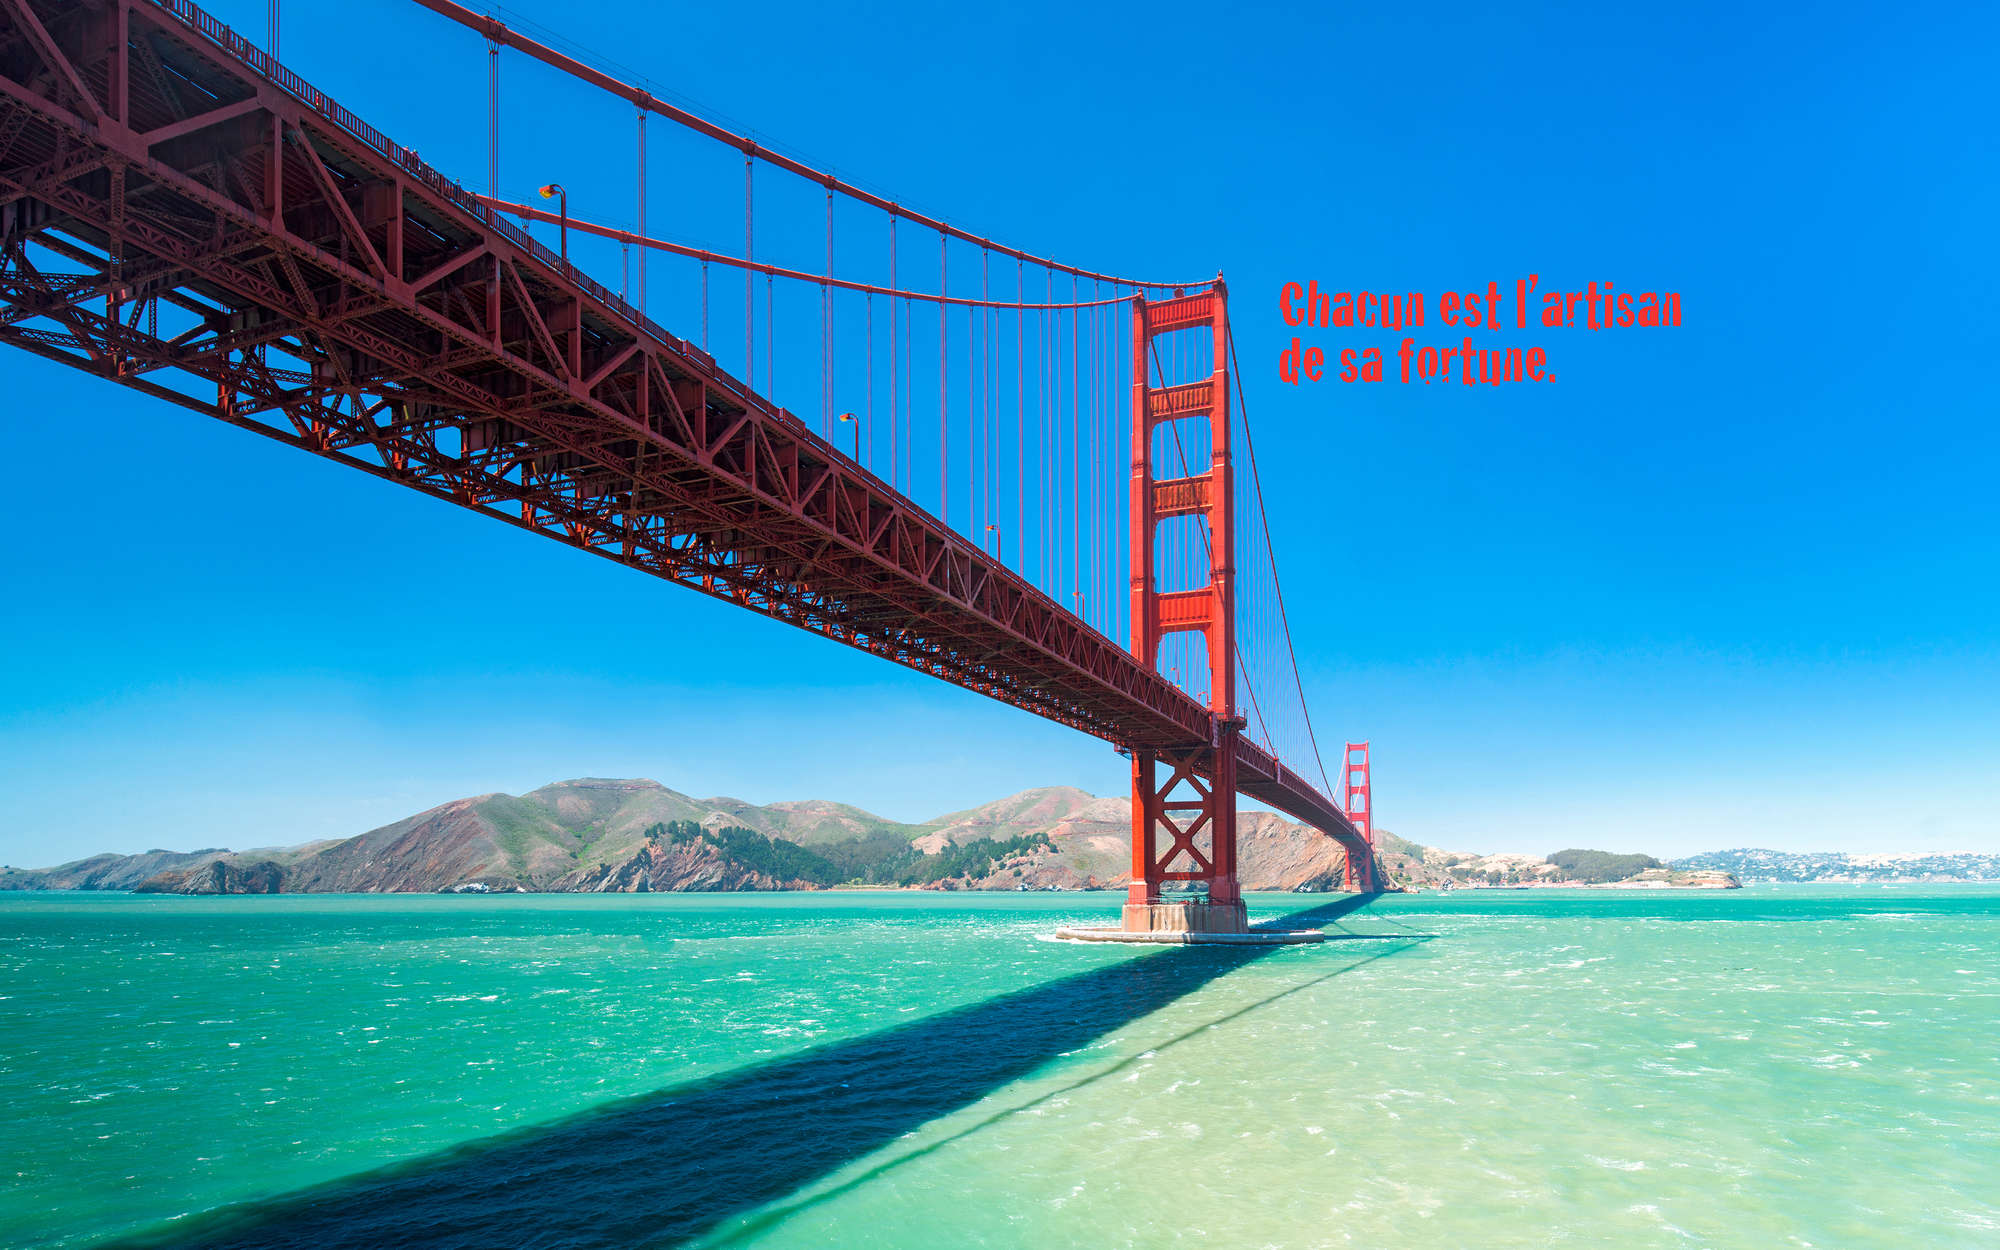             Golden Gate Bridge Onderlaag behang met Franse letters - structuurvlies
        